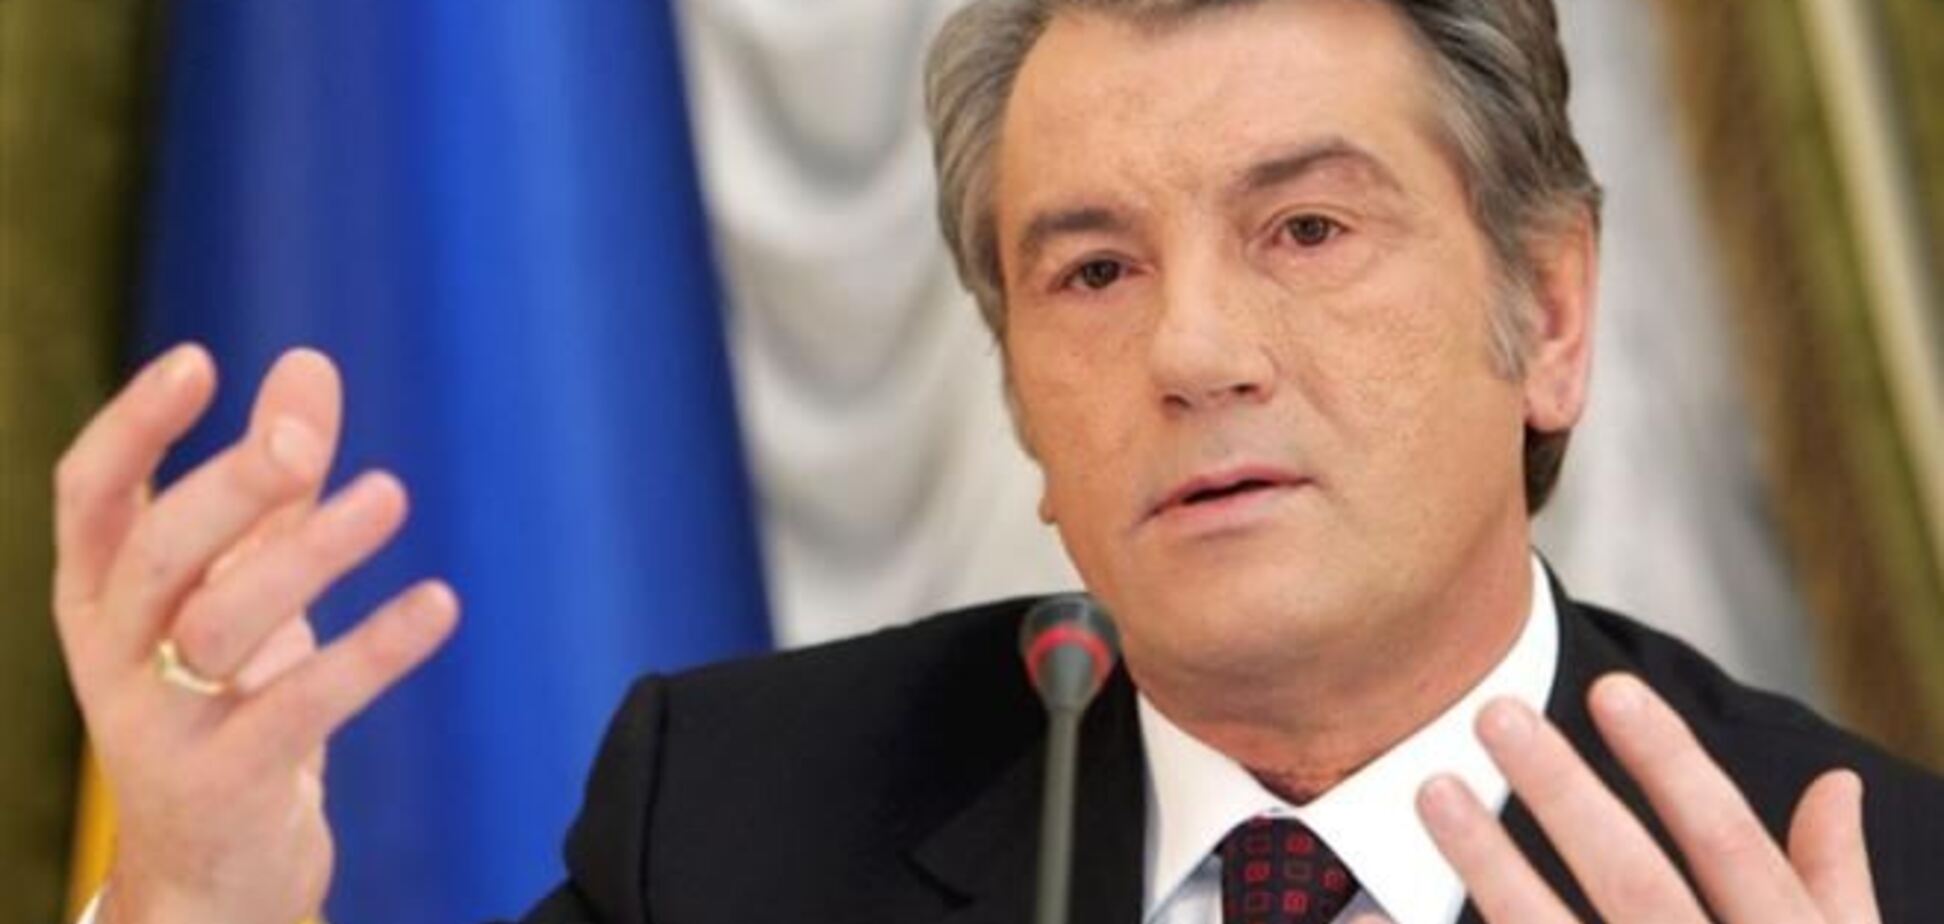 Ющенко: диалог может сделать больше, чем автомат или пистолет